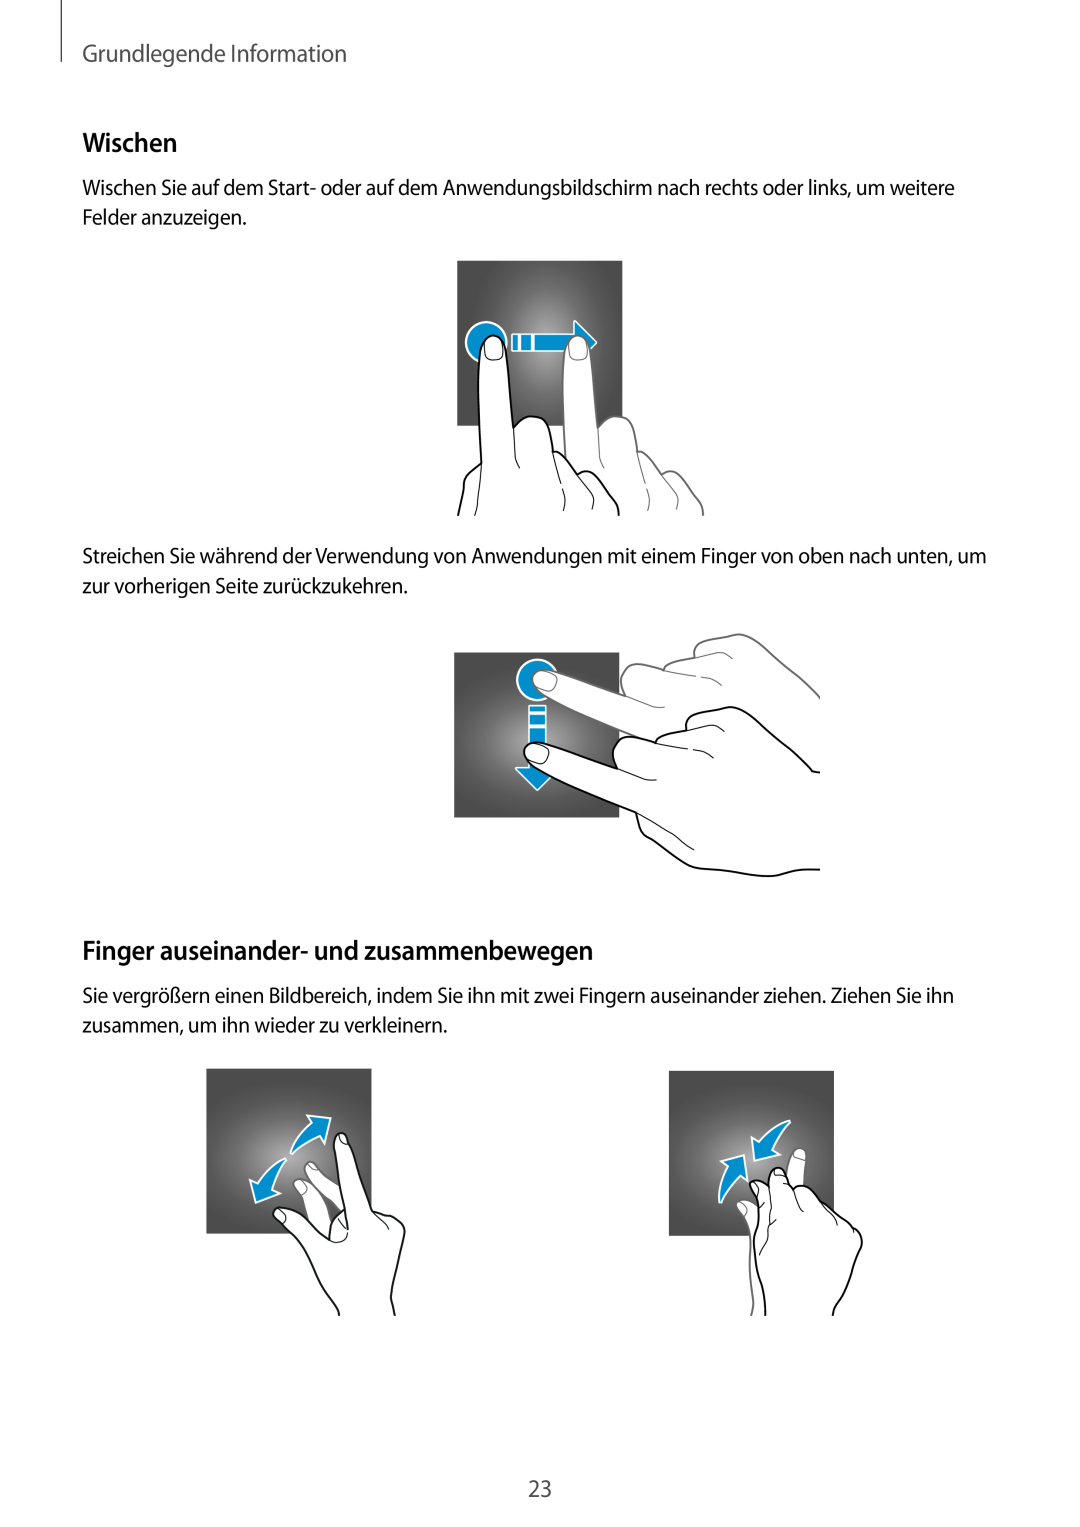 Samsung SM-V7000ZWAXEF, SM-V7000ZOATUR manual Wischen, Finger auseinander- und zusammenbewegen, Grundlegende Information 